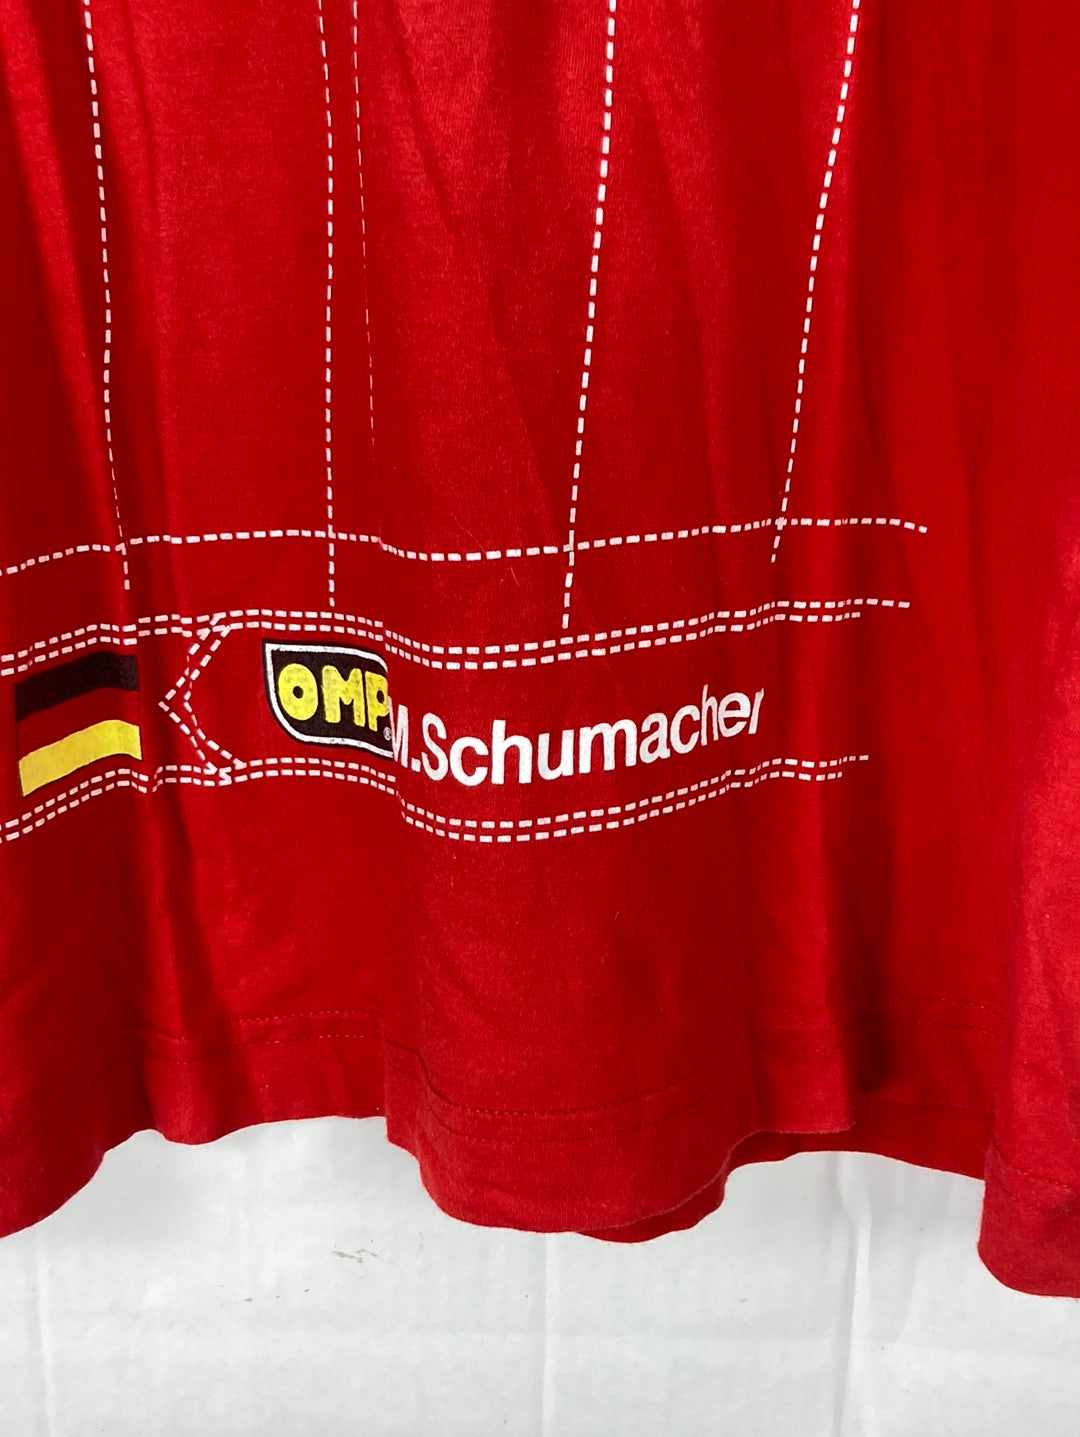 F1 Michael Schumacher 1999 T-Shirt (XL)